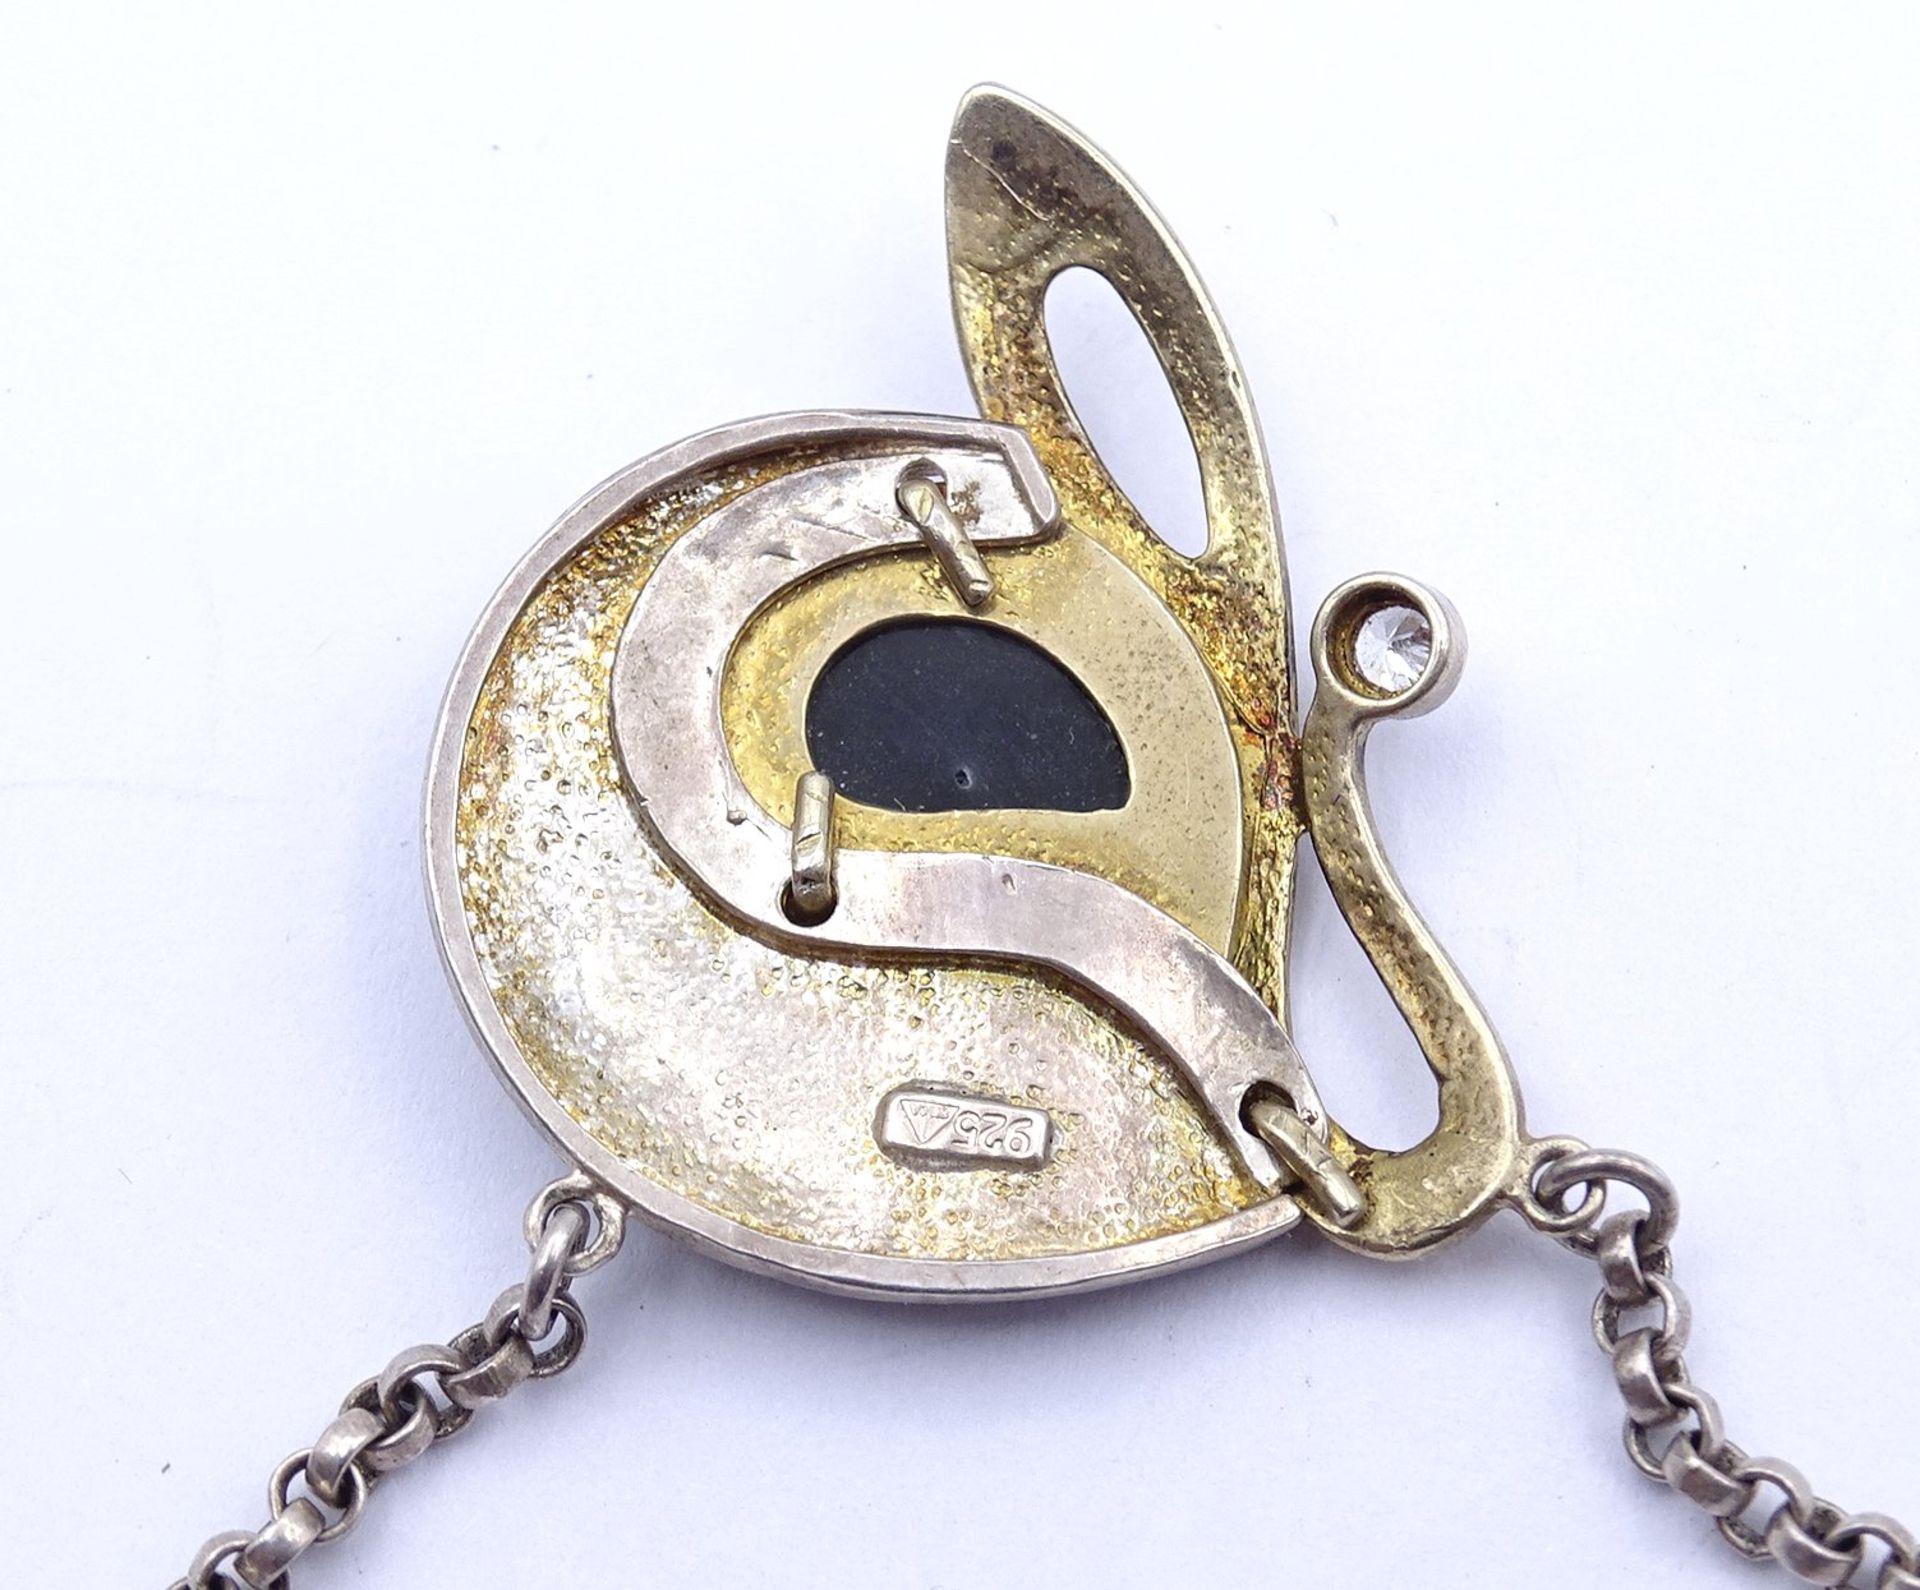 Halskette, Silber 0.925, L. 46,5cm, mit Perlmutt und einem rund facc. klaren Stein, 13,2g. - Bild 4 aus 4